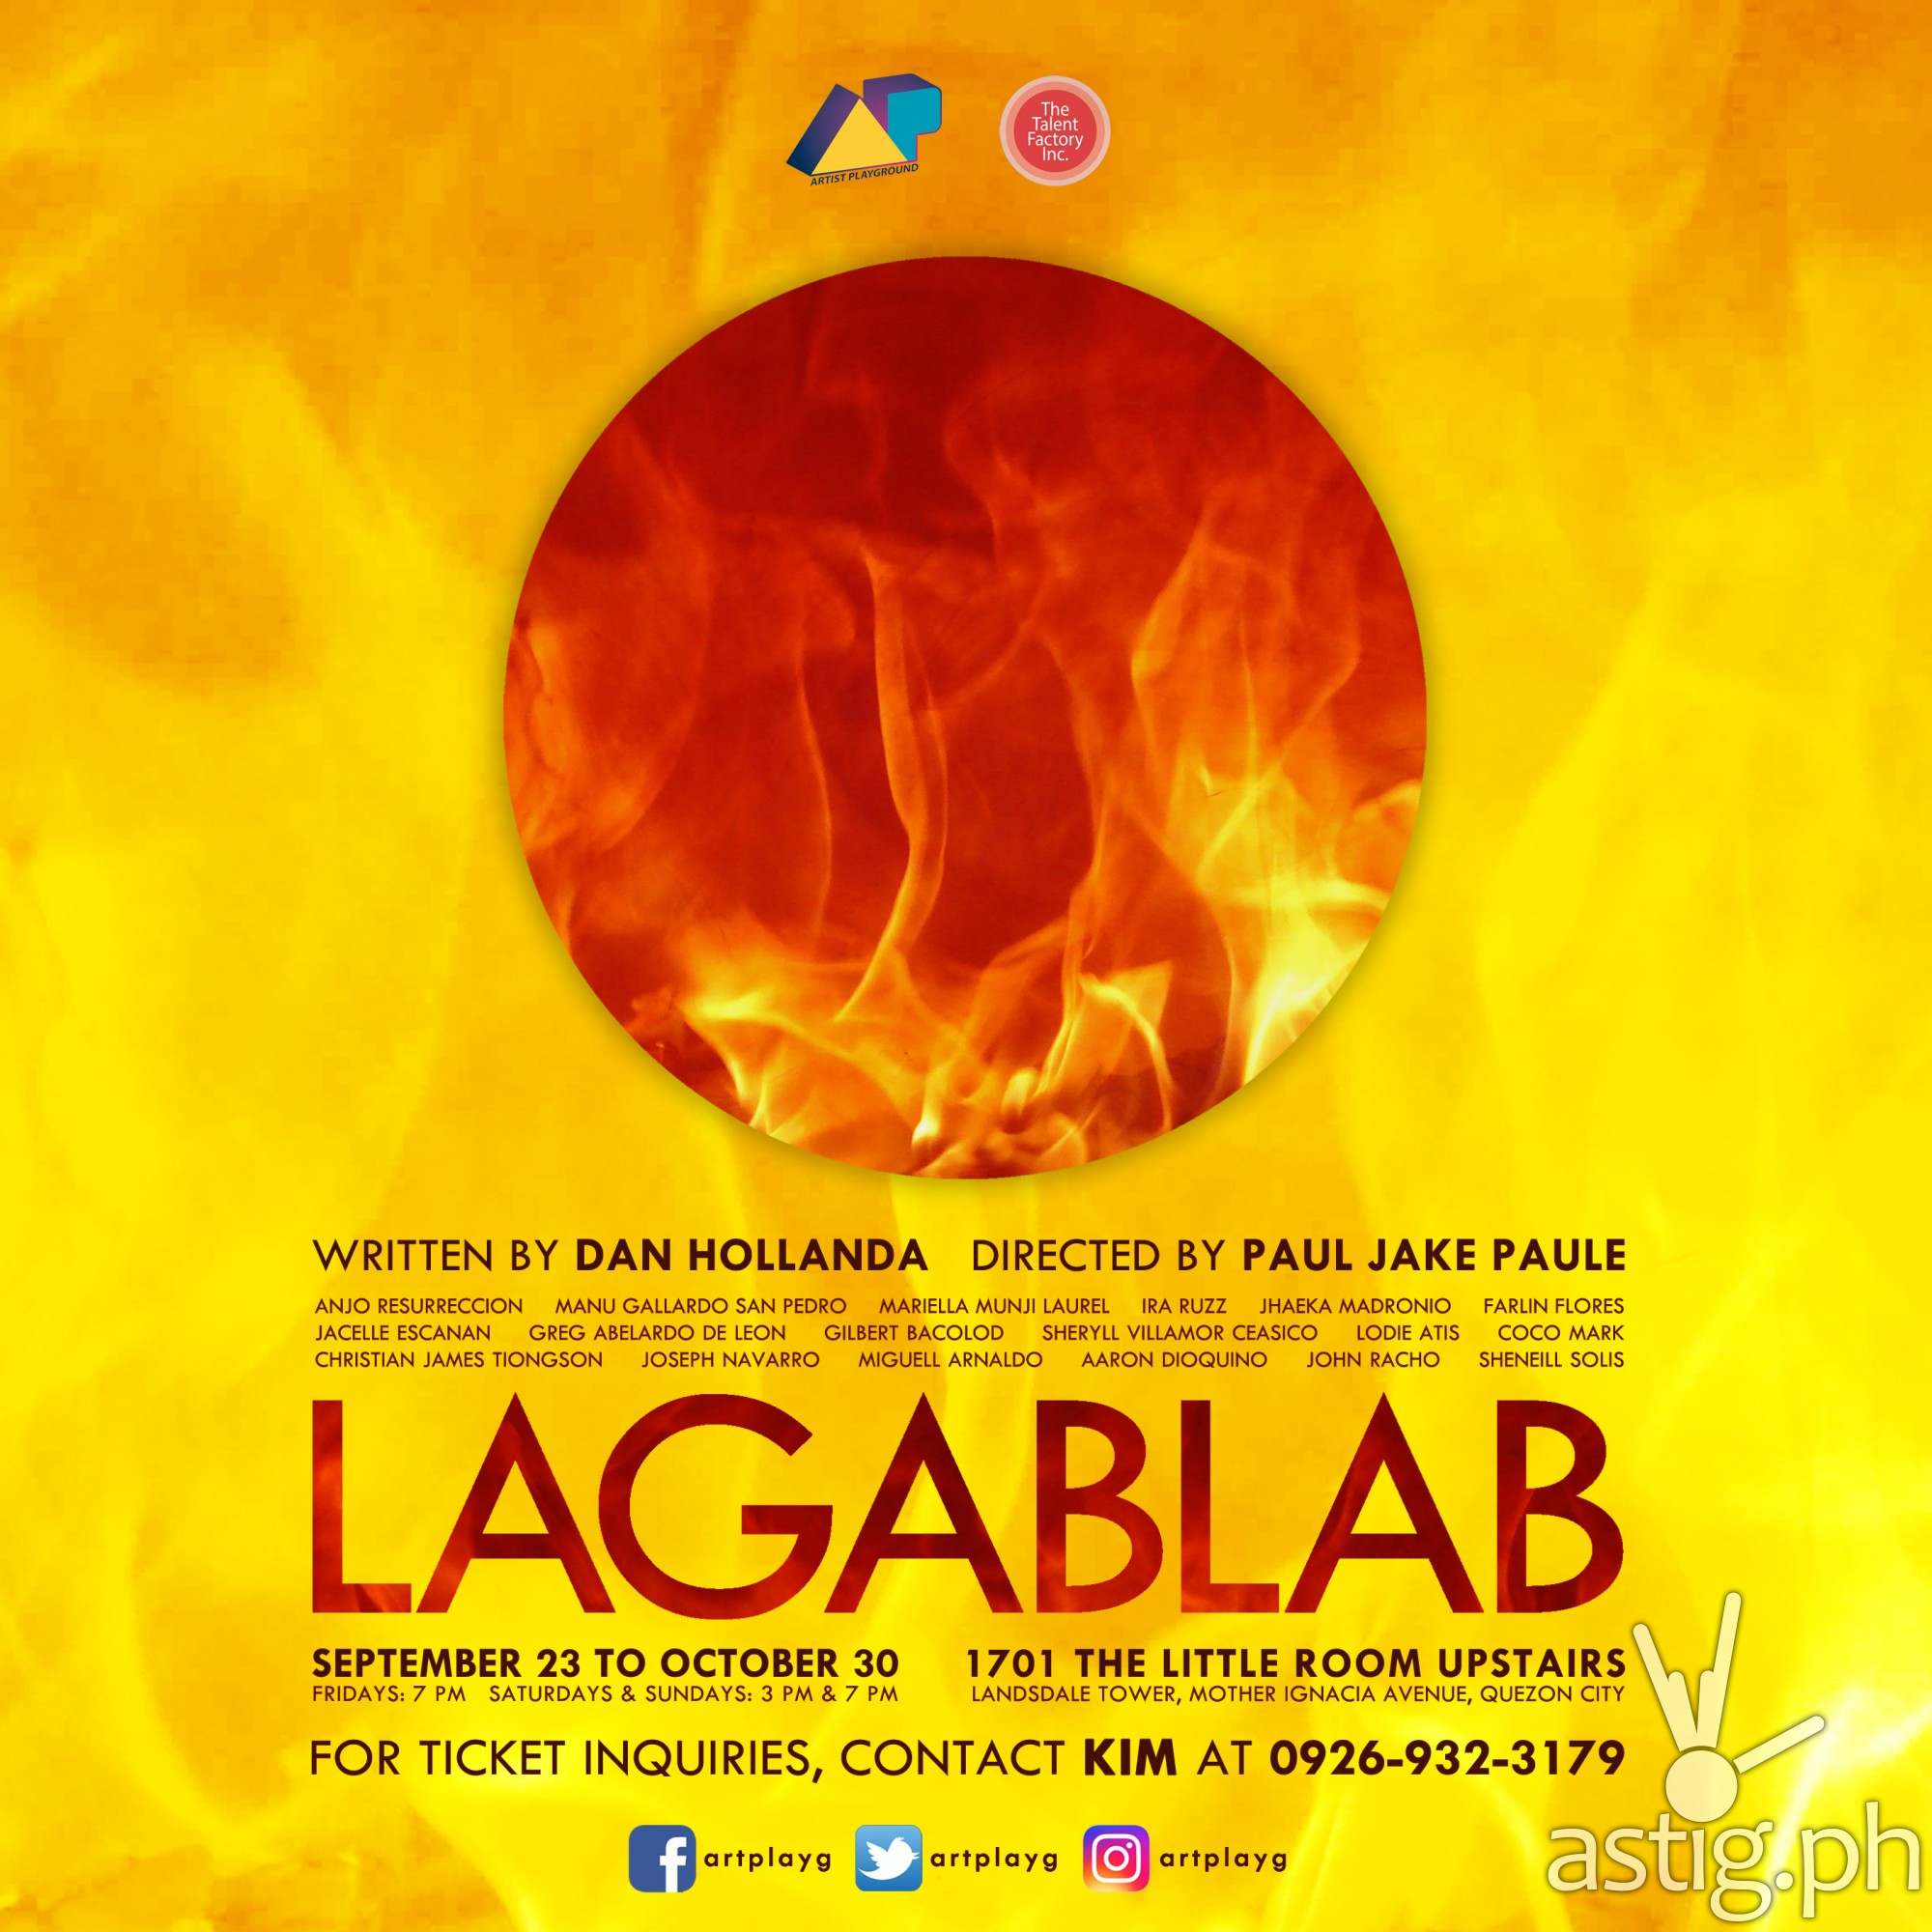 Lagablab by Artist Playground